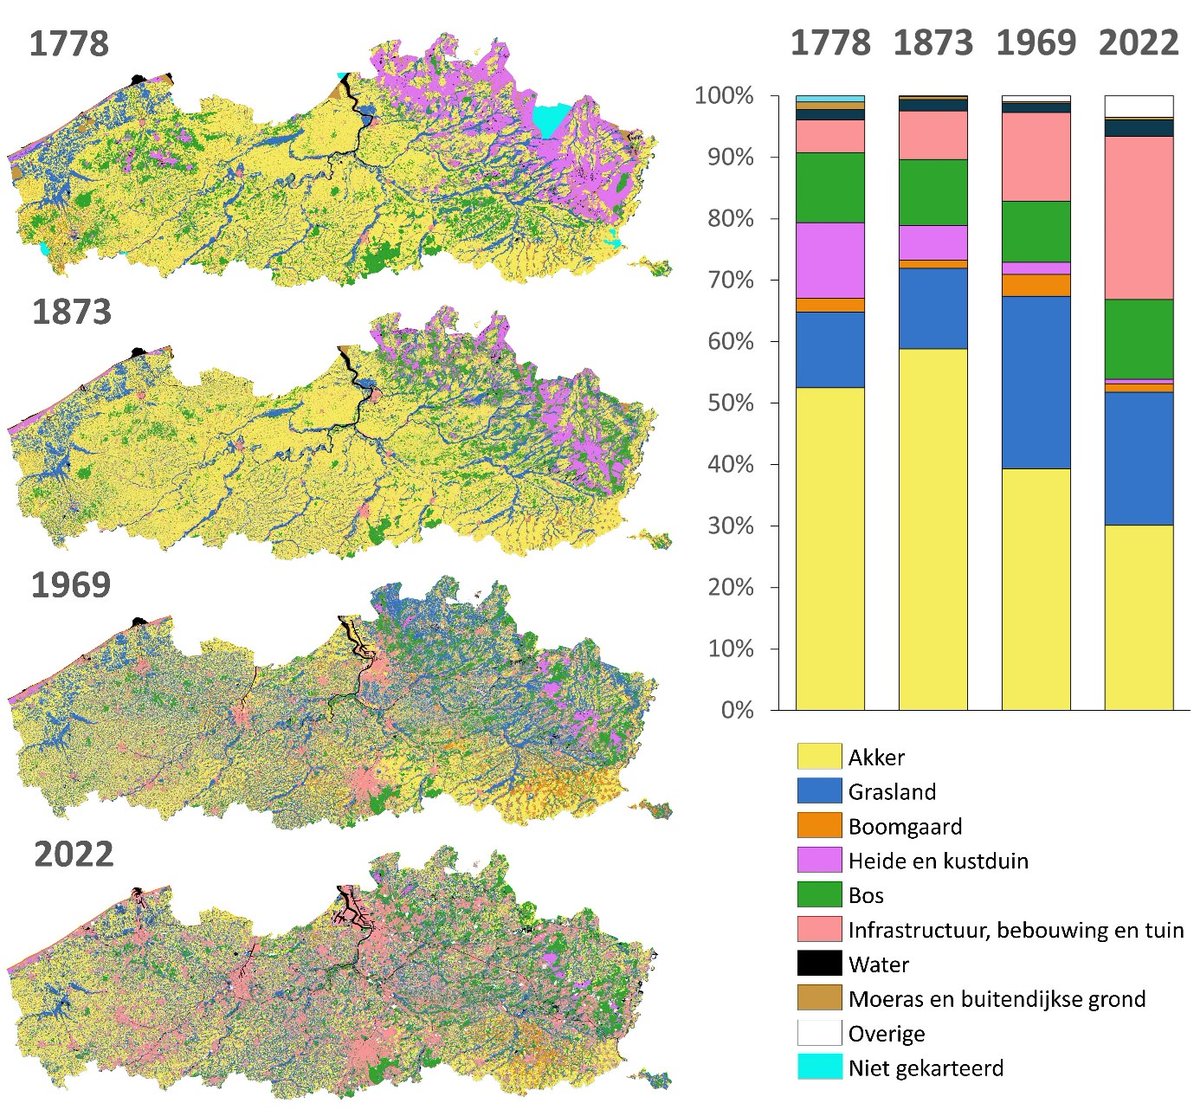 Slechts 20% van de oppervlakte van Vlaanderen is niet van landgebruik gewijzigd in de voorbije 250 jaar. Met behulp van AI digitaliseerden we historische kaarten en kunnen we ze nu op elkaar leggen voor analyse. @digi_vlaanderen @INBOVlaanderen Alle info: vito.be/nl/nieuws/250-…